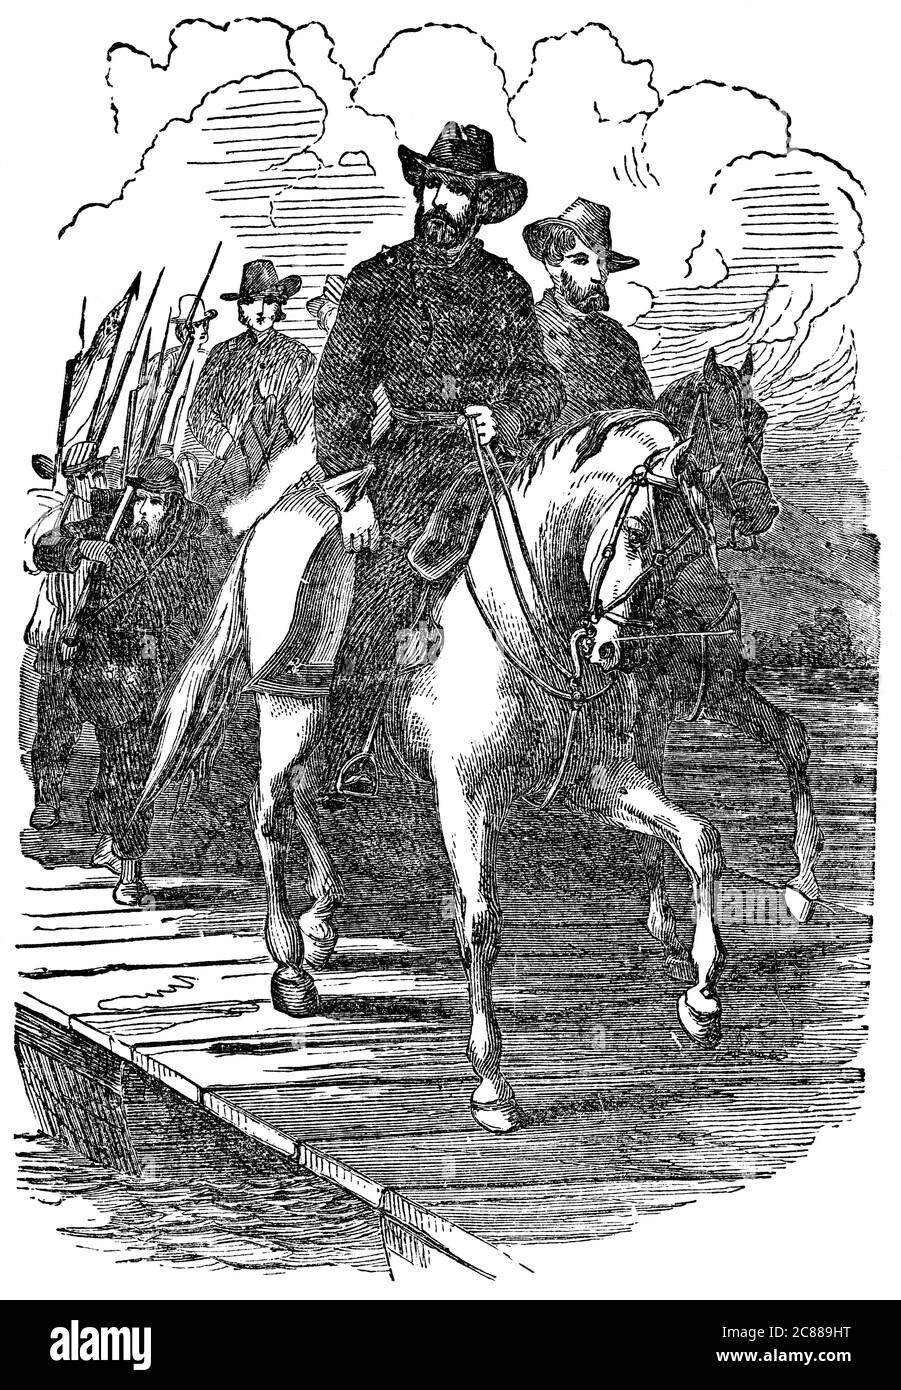 Immagine di un'illustrazione vintage incisa di un generale Ulysses Grant che marciò su Richmond durante la guerra civile americana, da un libro vittoriano datato 1880 Foto Stock